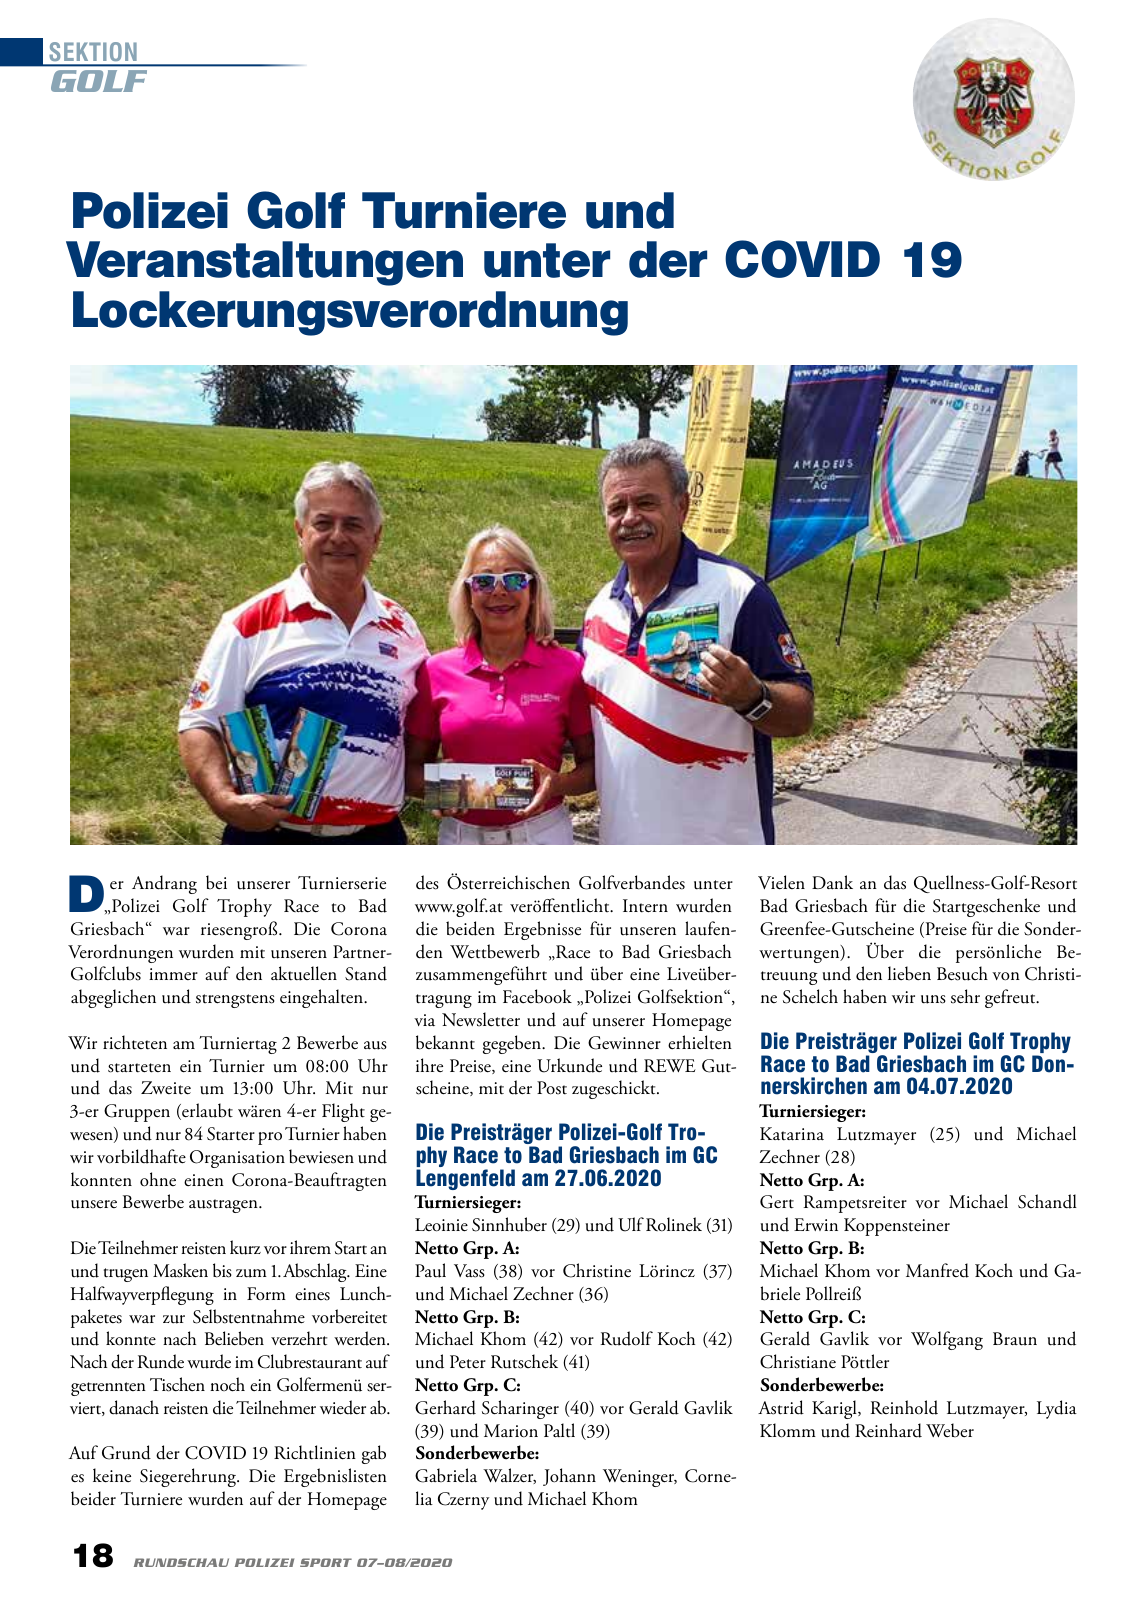 Vorschau Rundschau Polizei Sport 07-08/2020 Seite 18